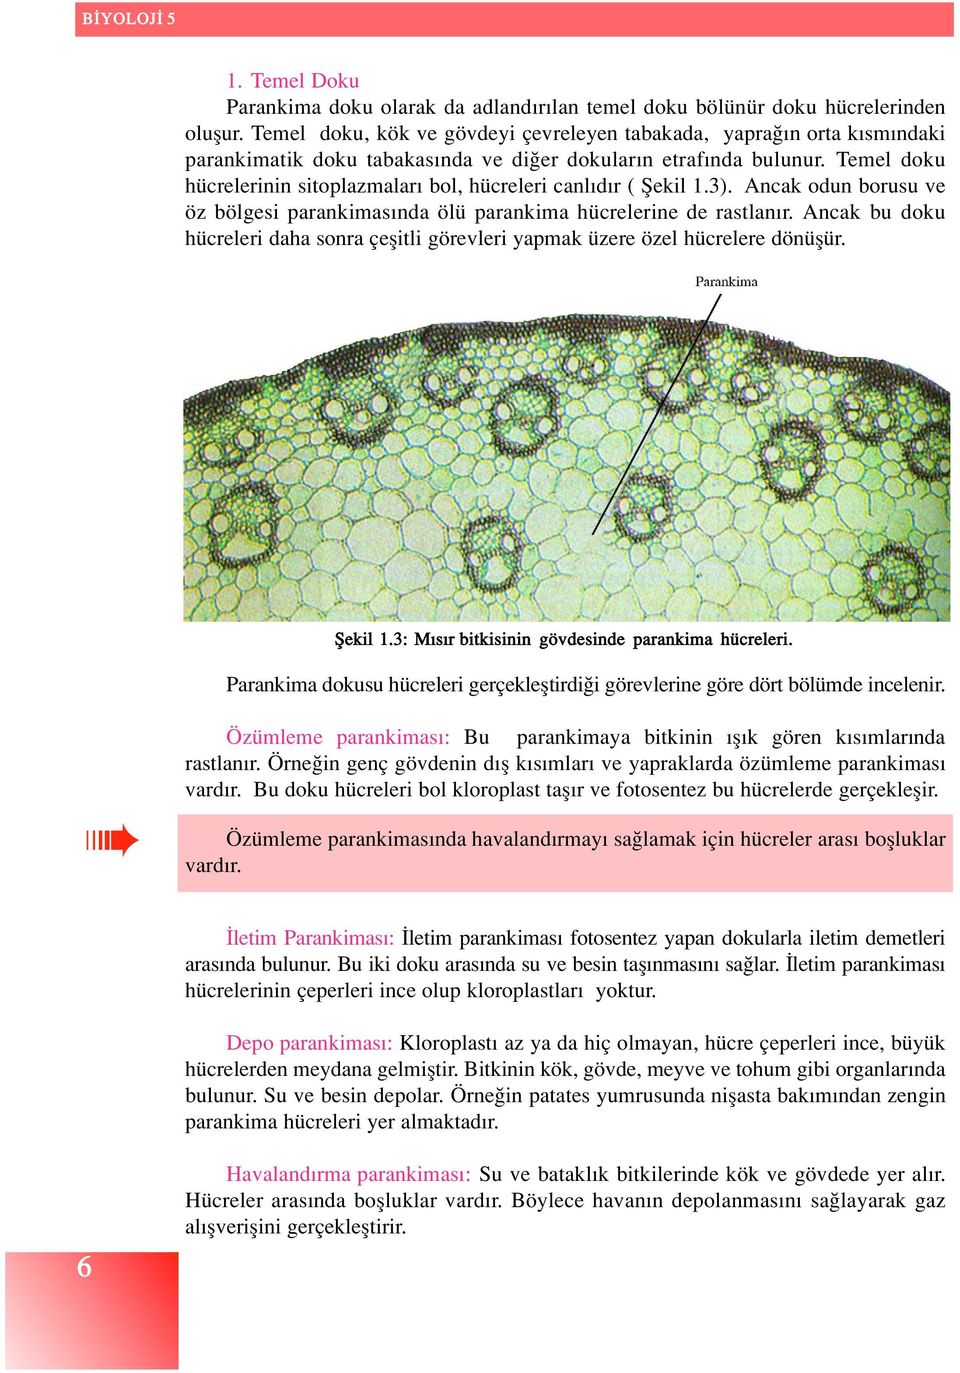 Temel doku hücrelerinin sitoplazmalar bol, hücreleri canl d r ( fiekil 1.3). Ancak odun borusu ve öz bölgesi parankimas nda ölü parankima hücrelerine de rastlan r.